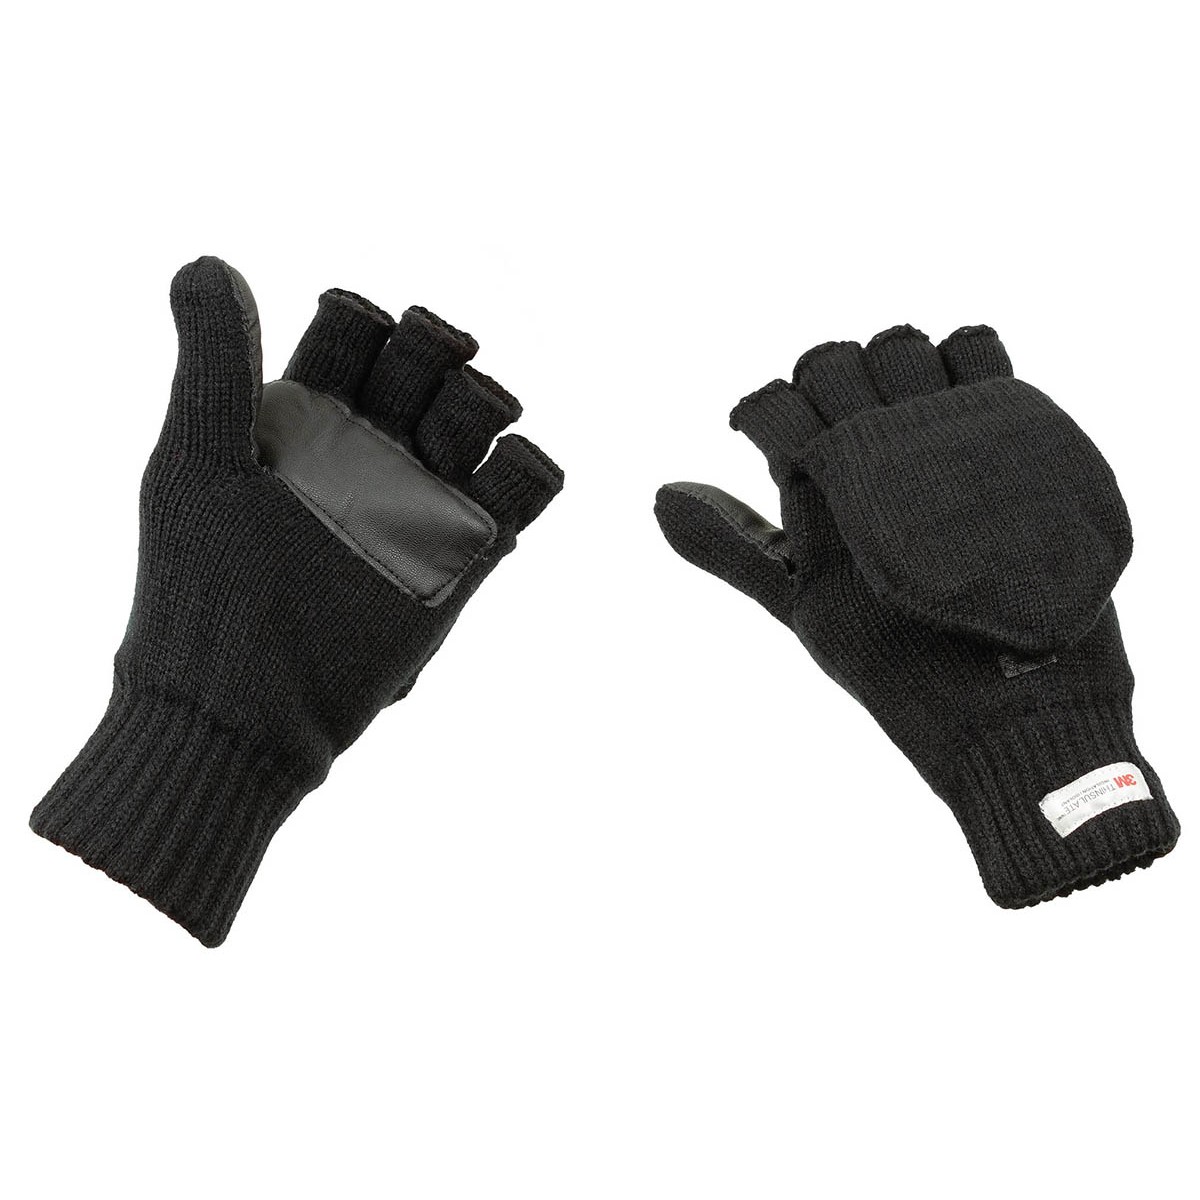 Pletené rukavice bez prstů s podšívkou MFH Thinsulate - černé, S